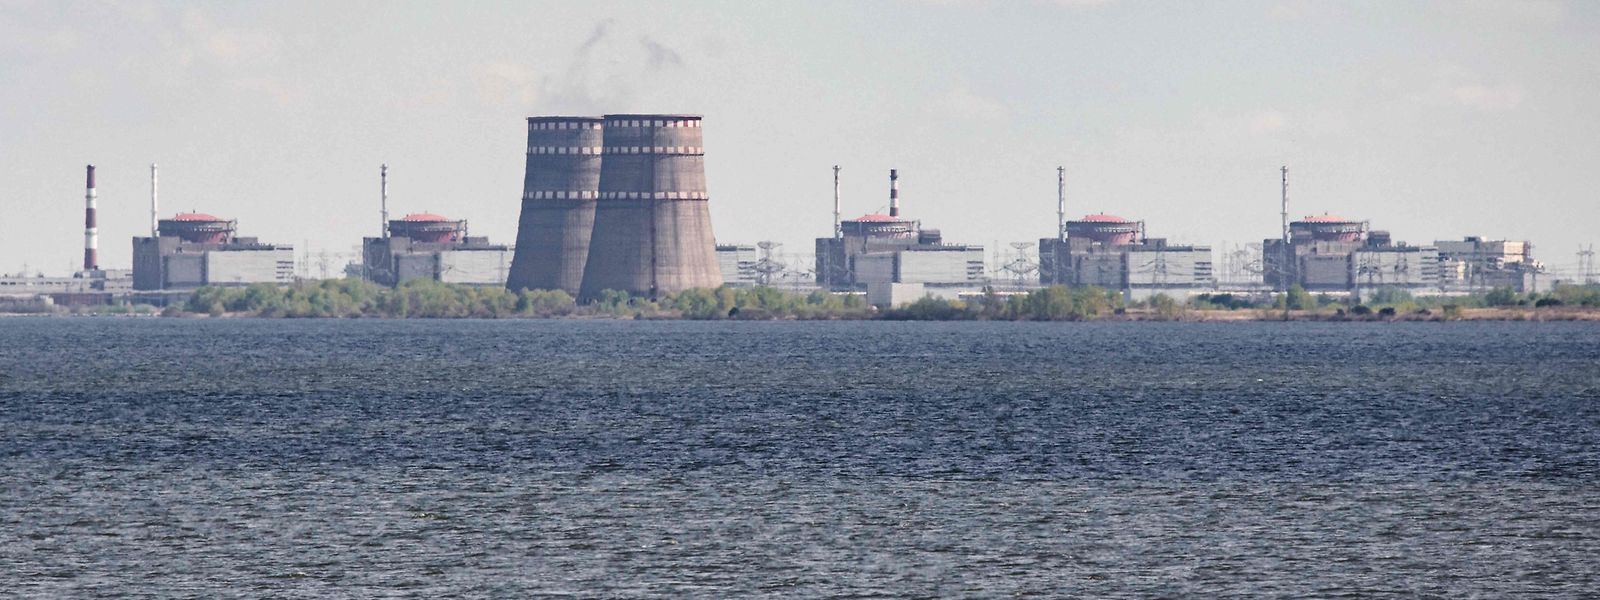 Saporischschja ist die größte Nuklearanlage in Europa.